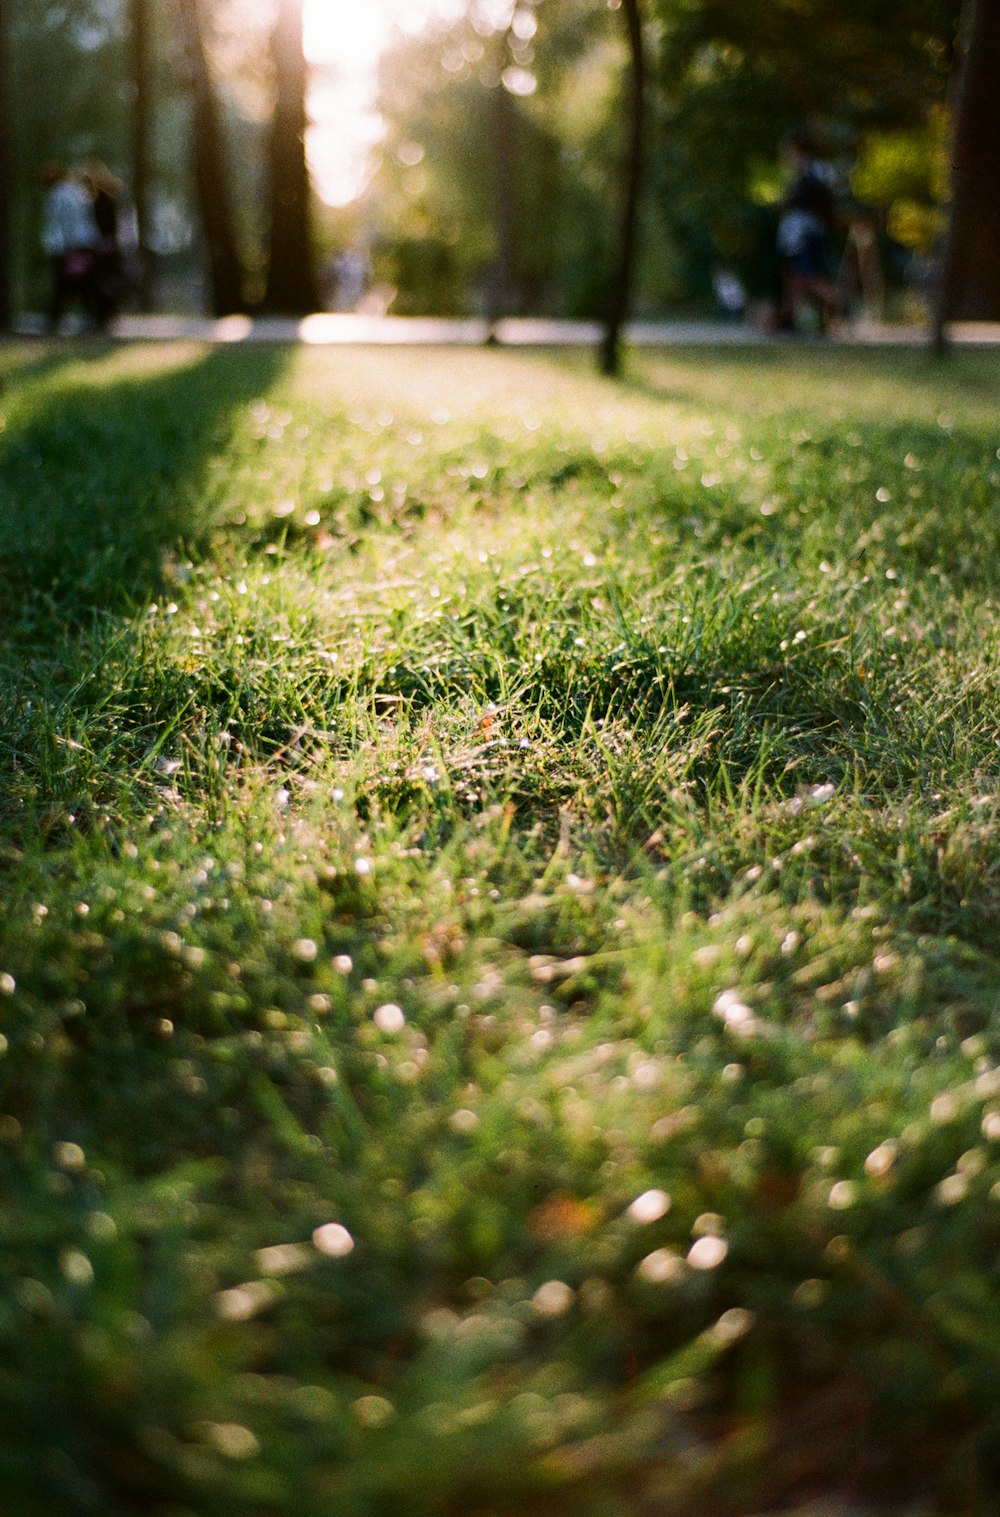 Ngắm cỏ xanh tươi, ta tự nhớ đến những buổi chiều trong lành, tĩnh lặng. Hãy cùng chiêm ngưỡng bức hình đầy sắc màu, hình ảnh tuyệt đẹp về bãi cỏ mênh mông, nơi mà cây cỏ được tôn vinh vẻ đẹp hoang sơ tự nhiên.